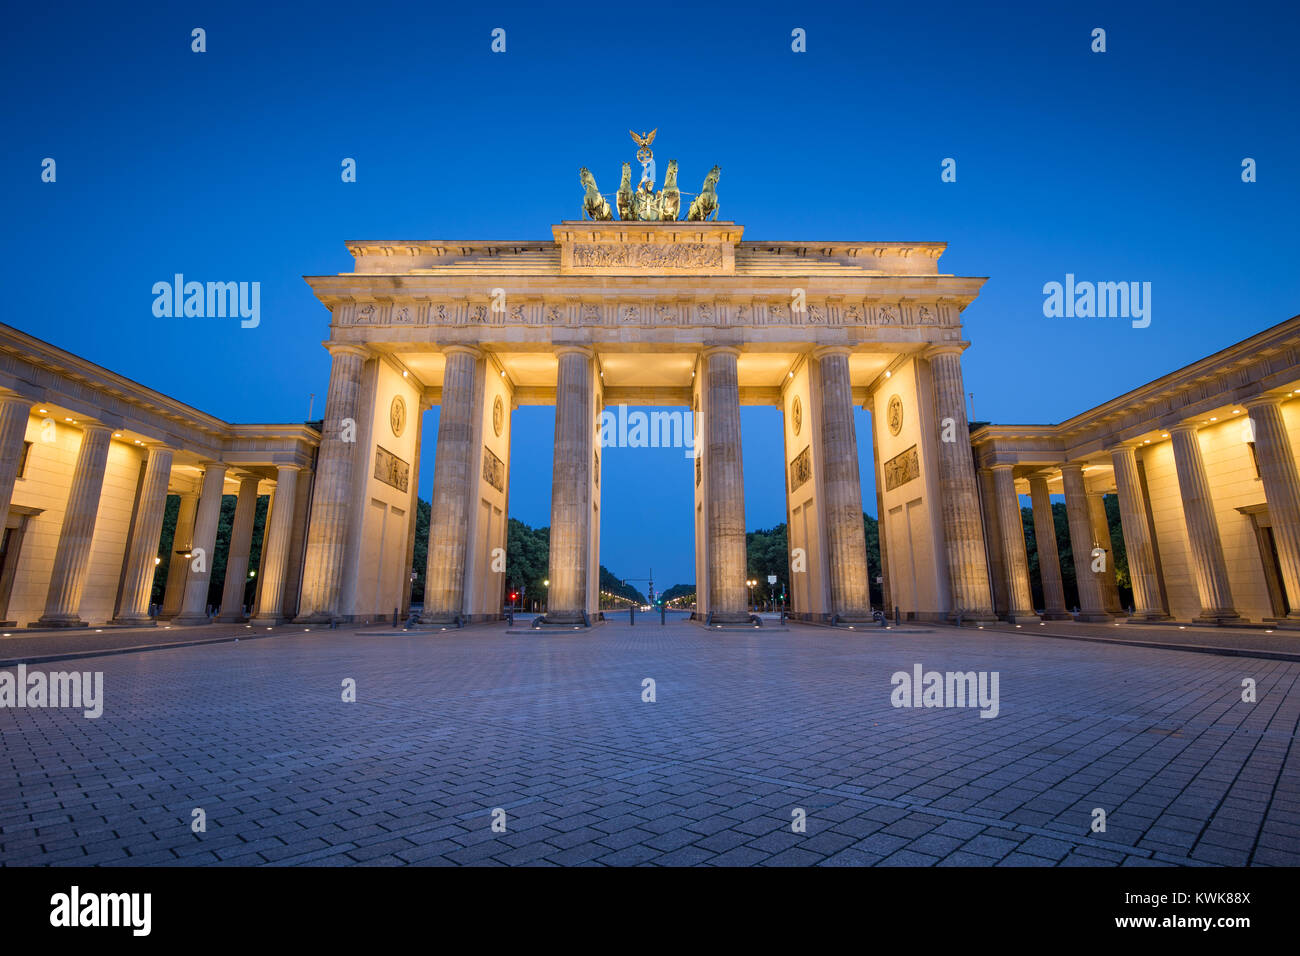 Klassische Ansicht des berühmten Brandenburger Tor (Brandenburger Tor), eines der bekanntesten Wahrzeichen und nationale Symbole Deutschlands, in der Dämmerung in blau Stockfoto